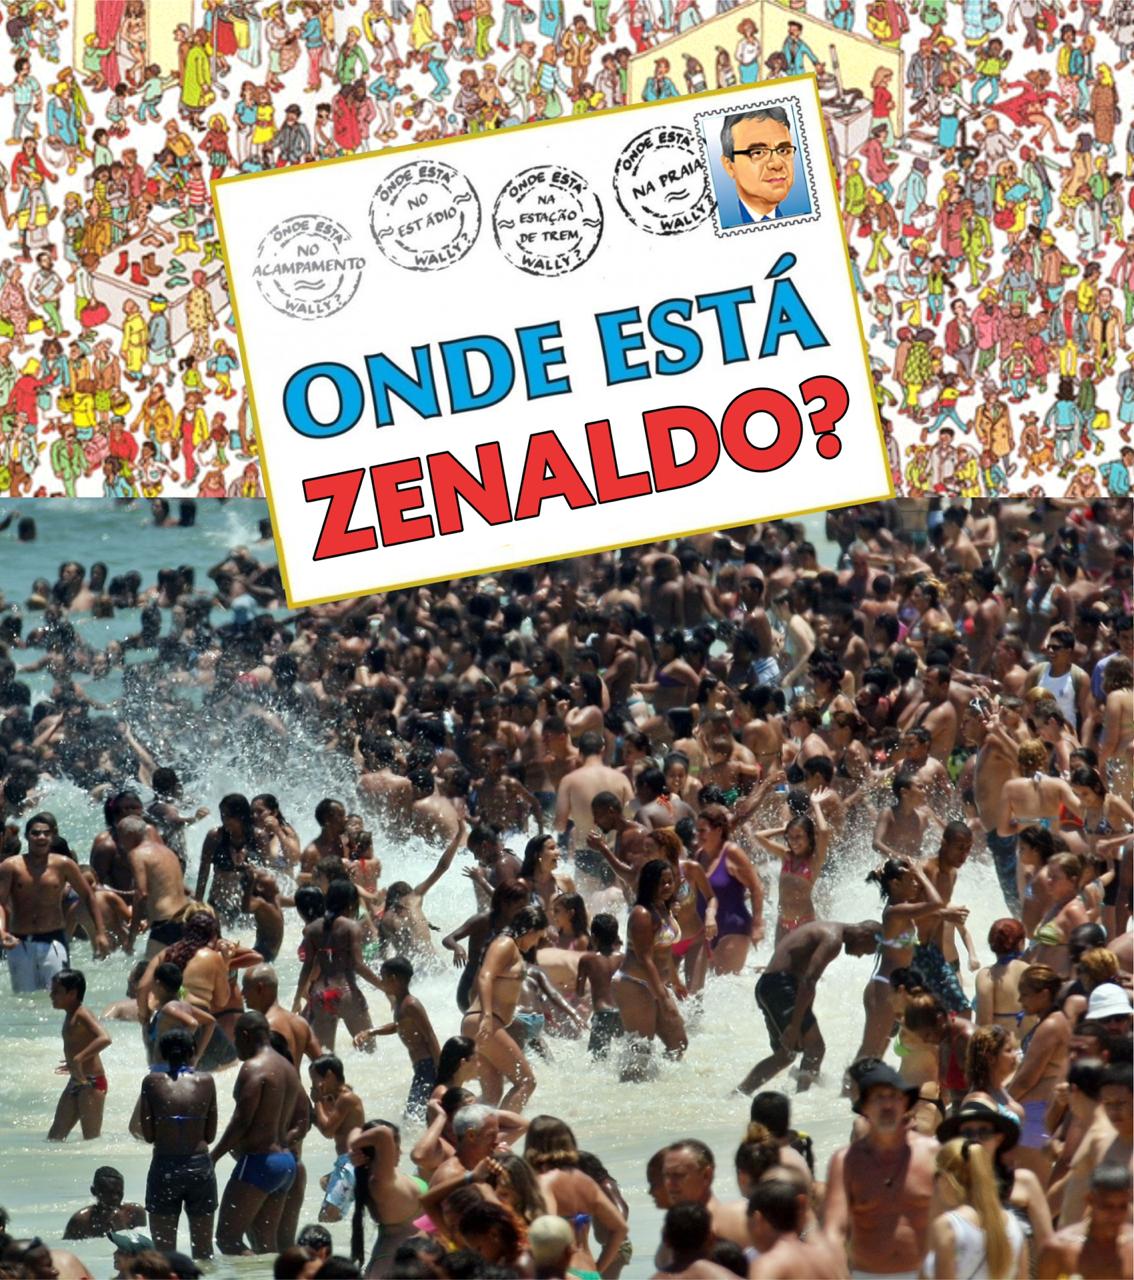 Zenaldo vira meme após ser flagrado 'vistoriando obras' em praia